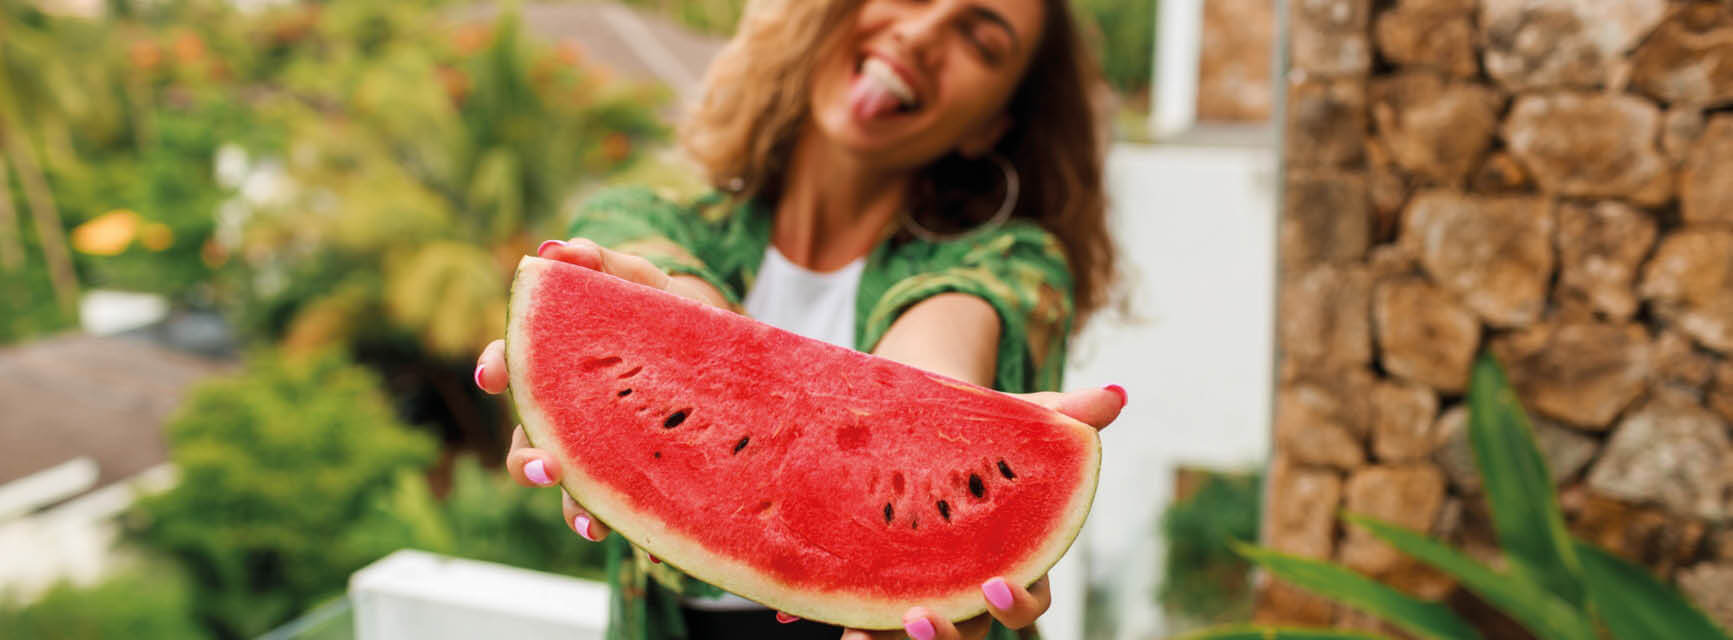 Eine Frau hält fröhlich ein Stück Wassermelone in die Kamera